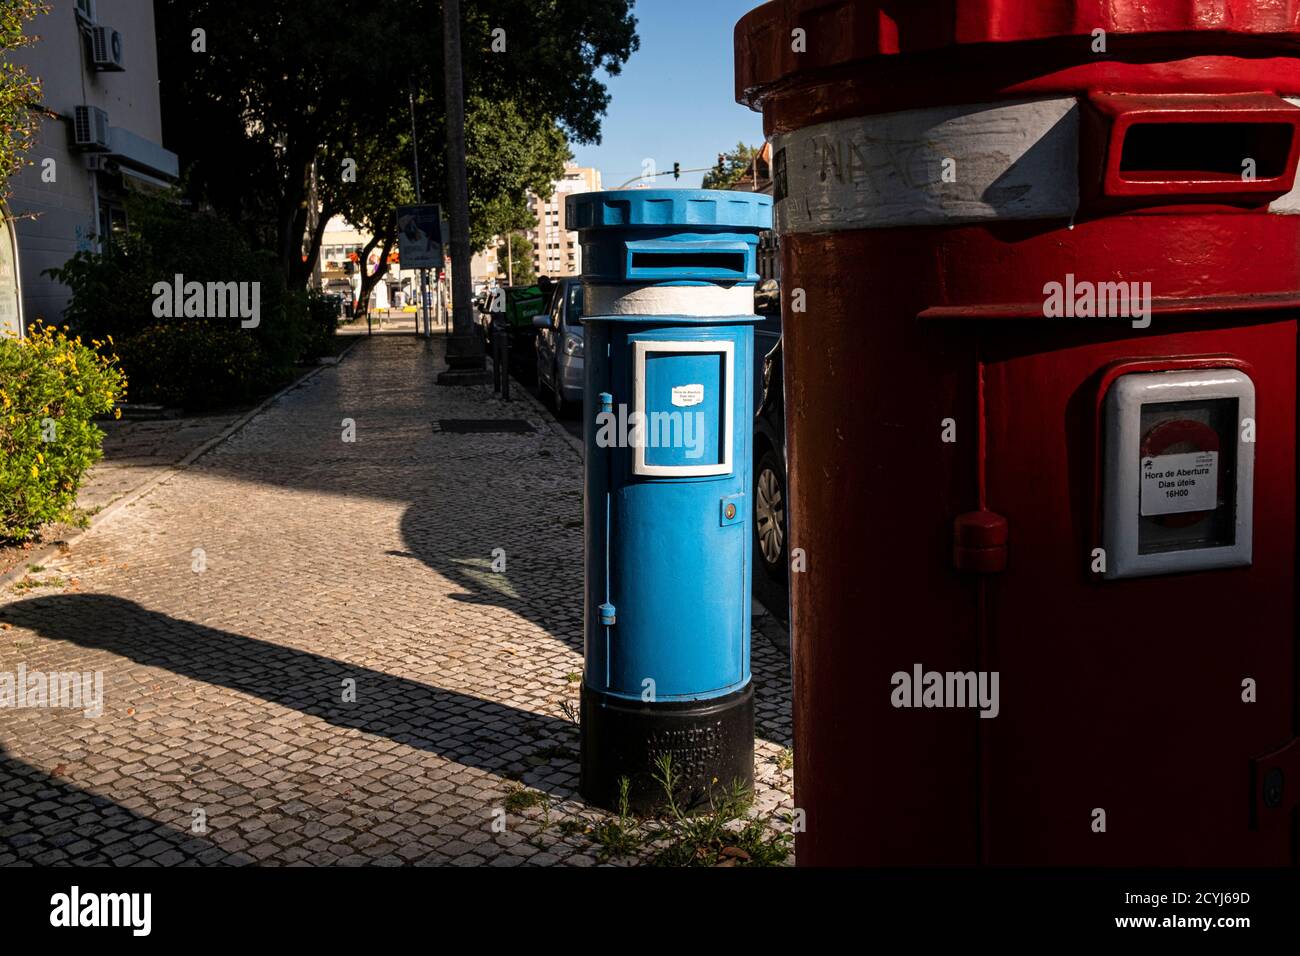 Bureau de poste portugal Banque de photographies et d'images à haute  résolution - Alamy